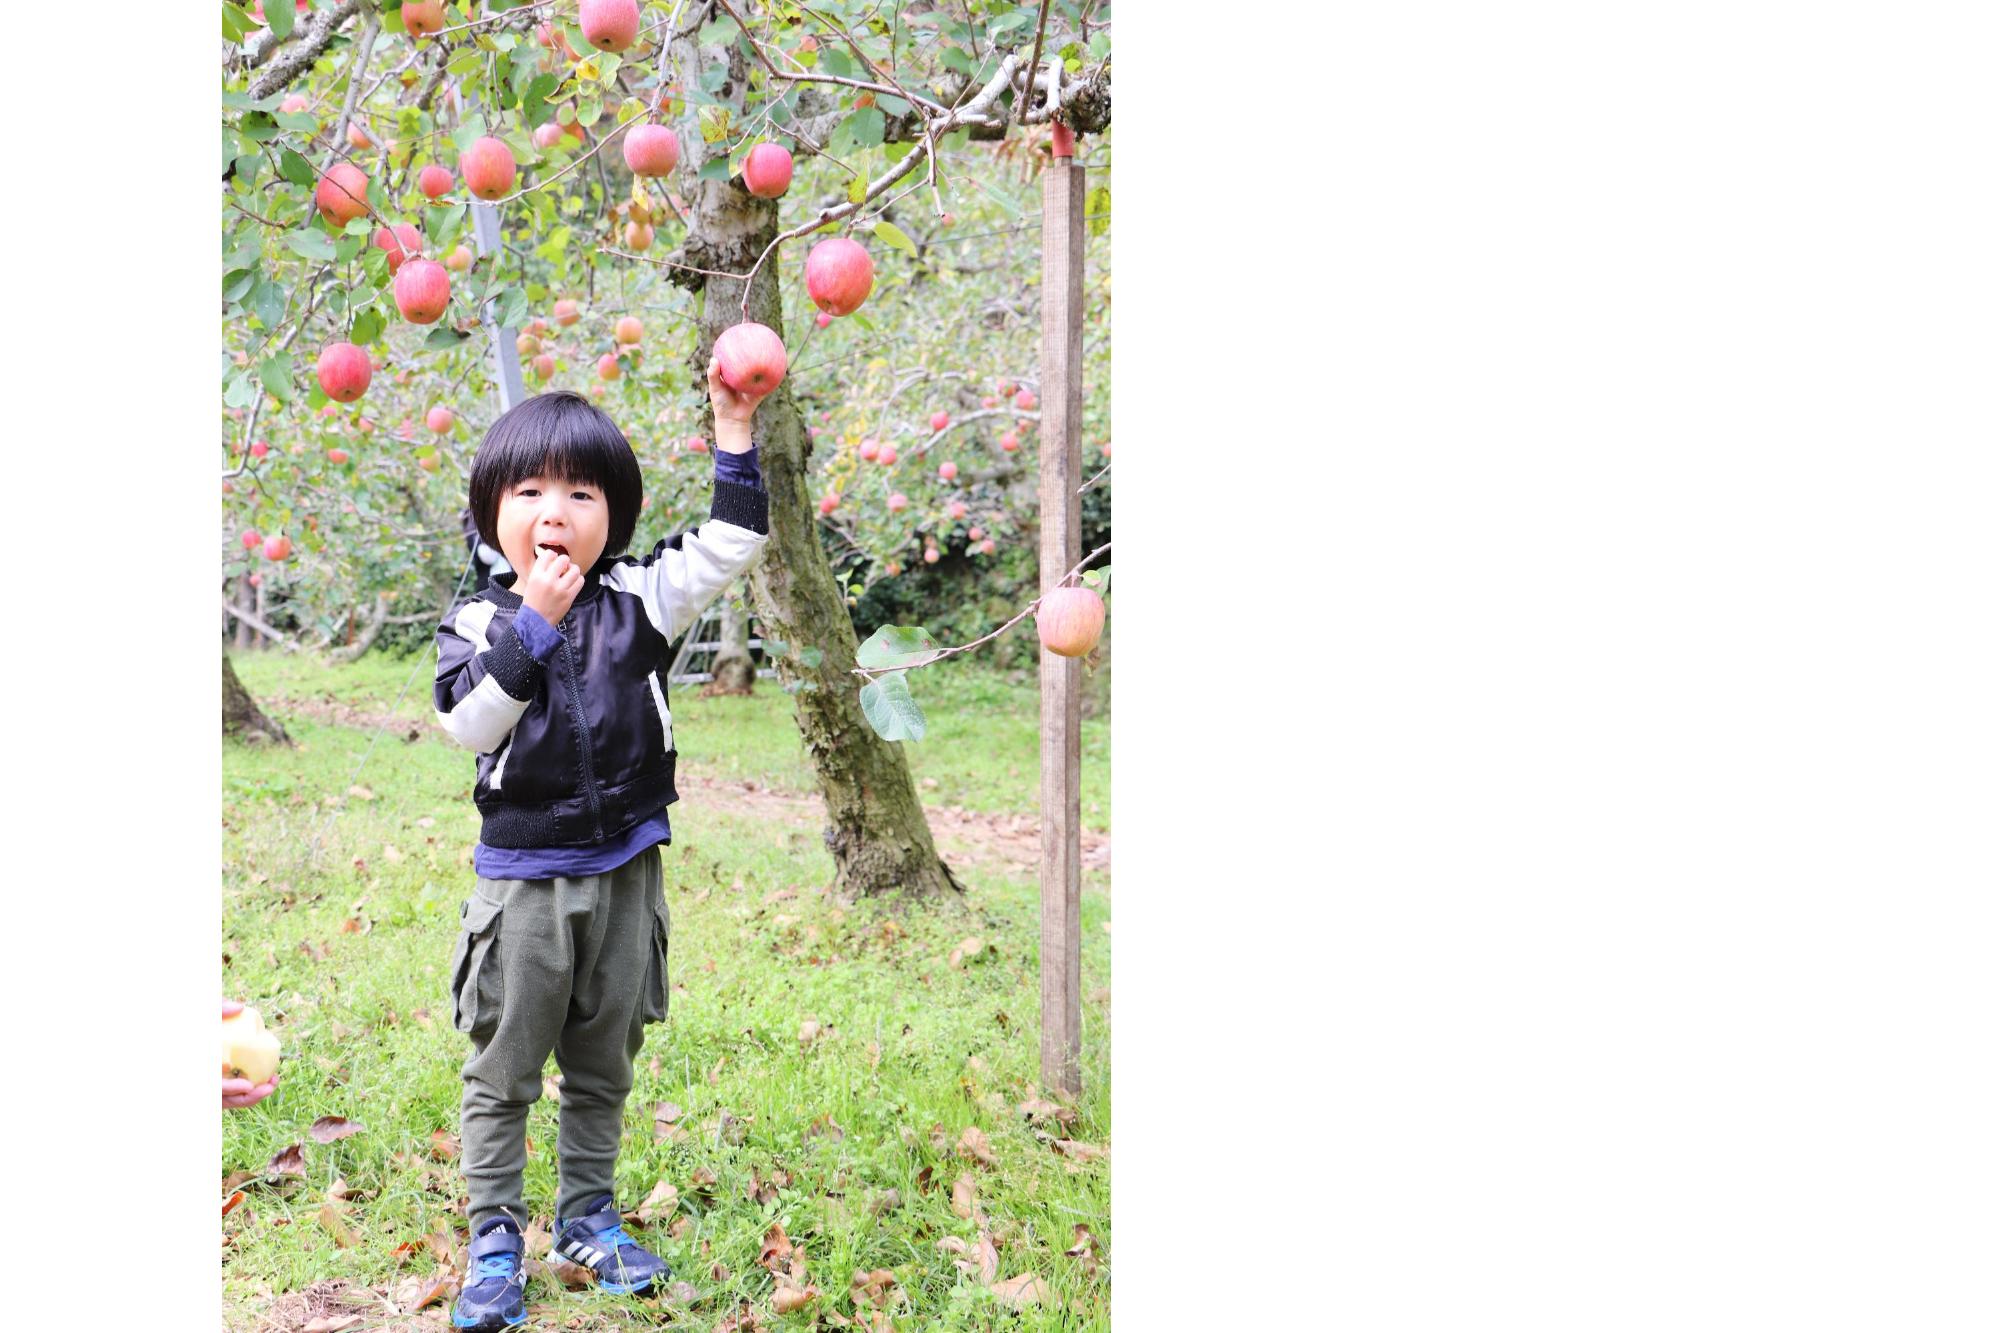 りんご狩りでりんごを食べる子どもの写真